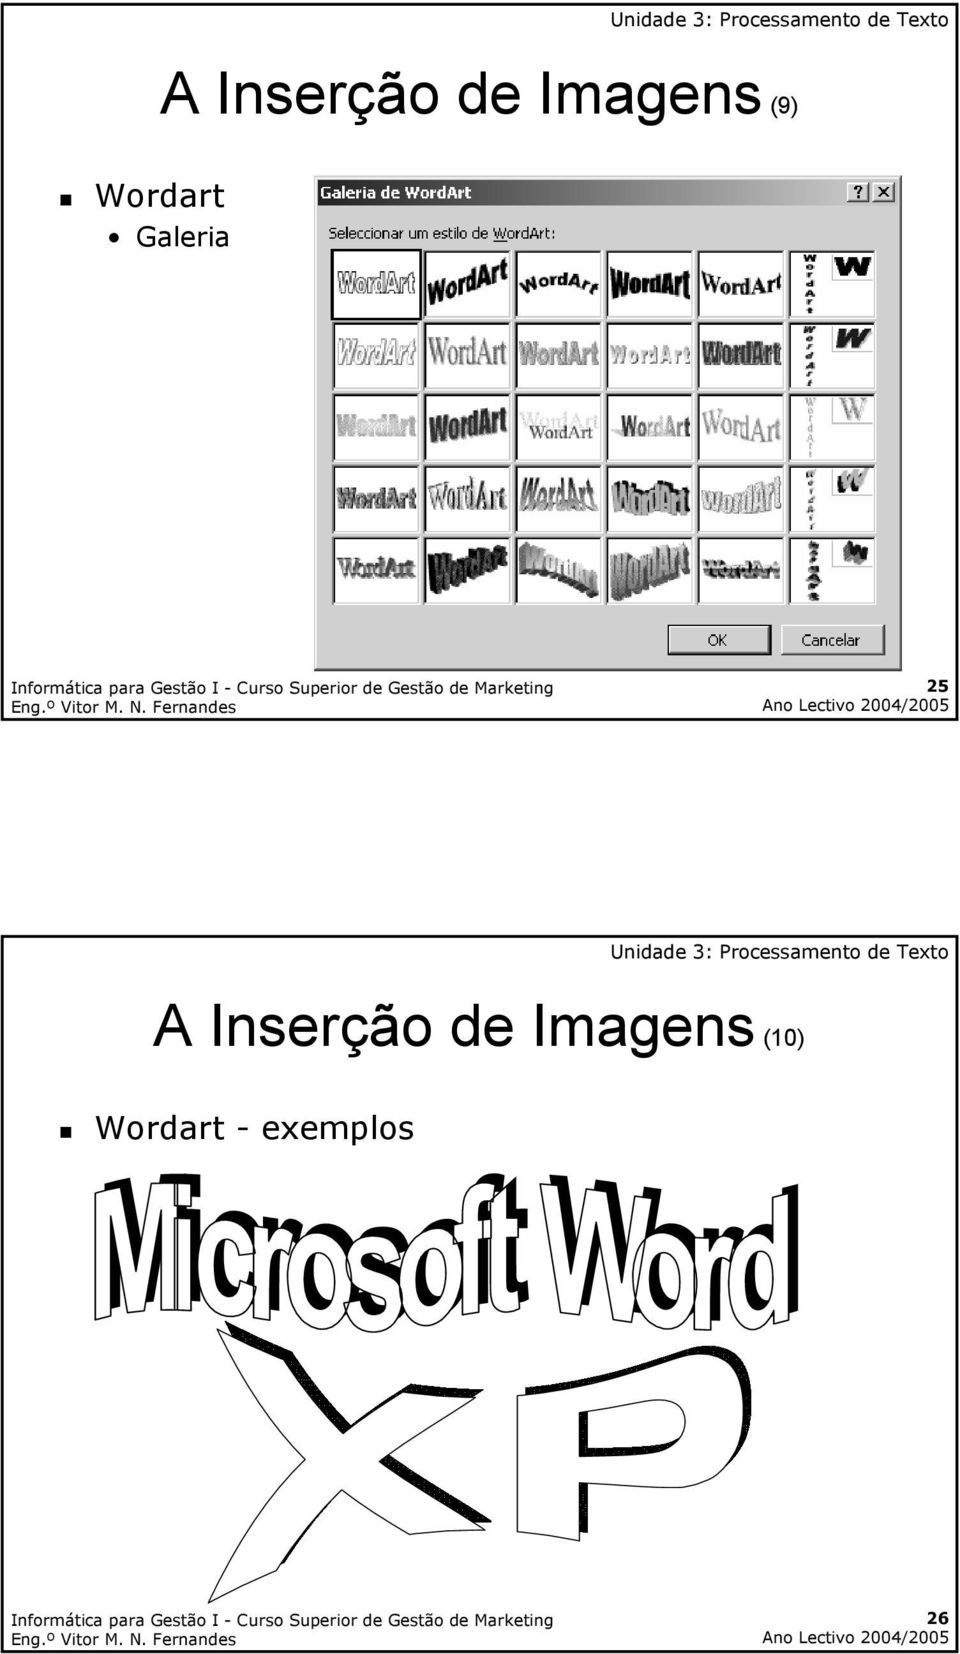 (10) Wordart - exemplos